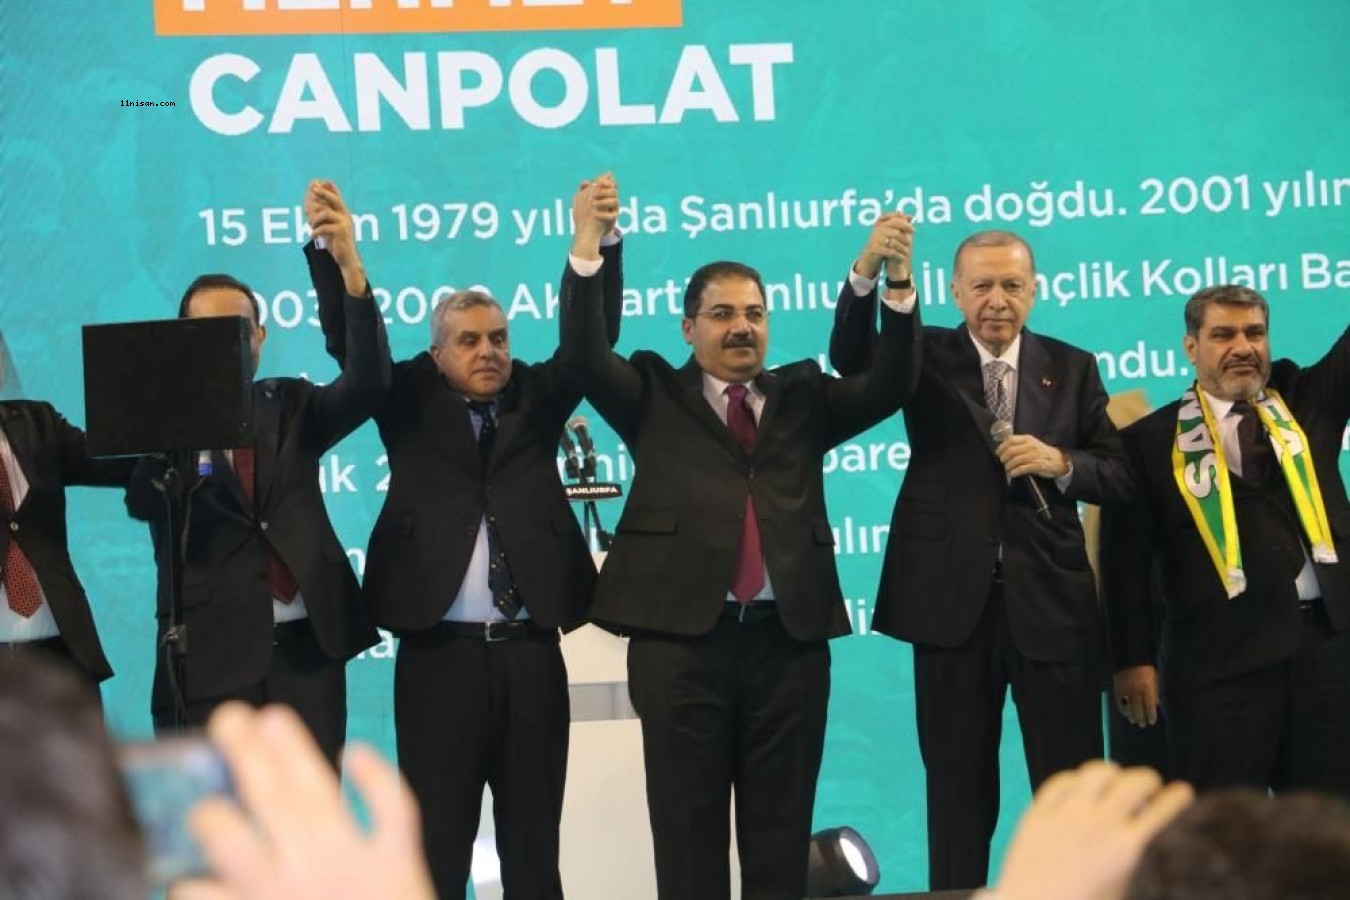 Haliliye Belediye Başkanı Mehmet Canpolat’a büyük ilgi